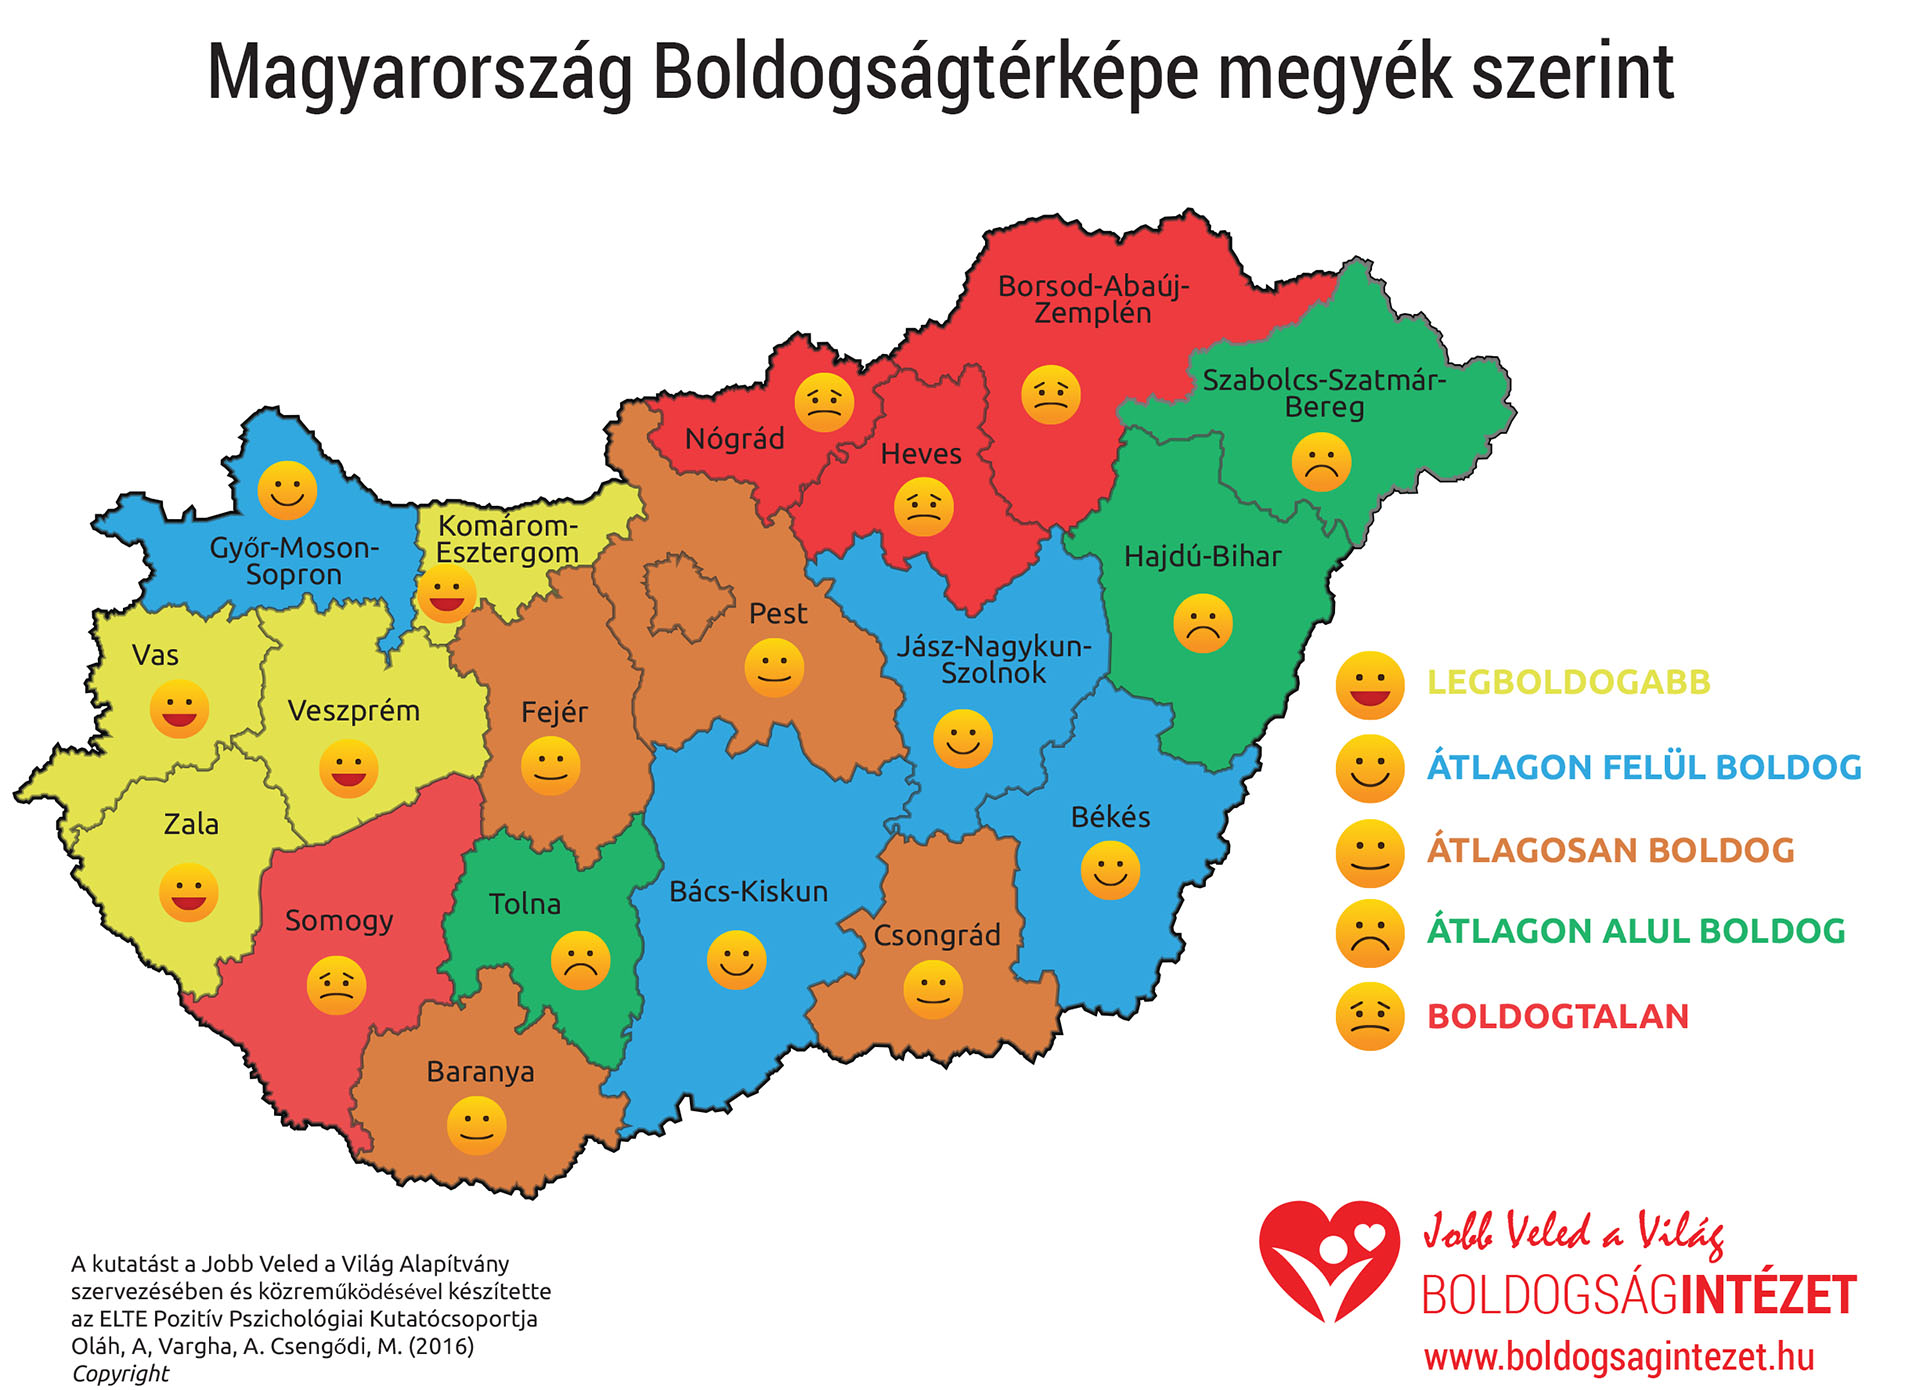 Boldogságtérkép, avagy mi jellemzi a legboldogabb magyarokat 